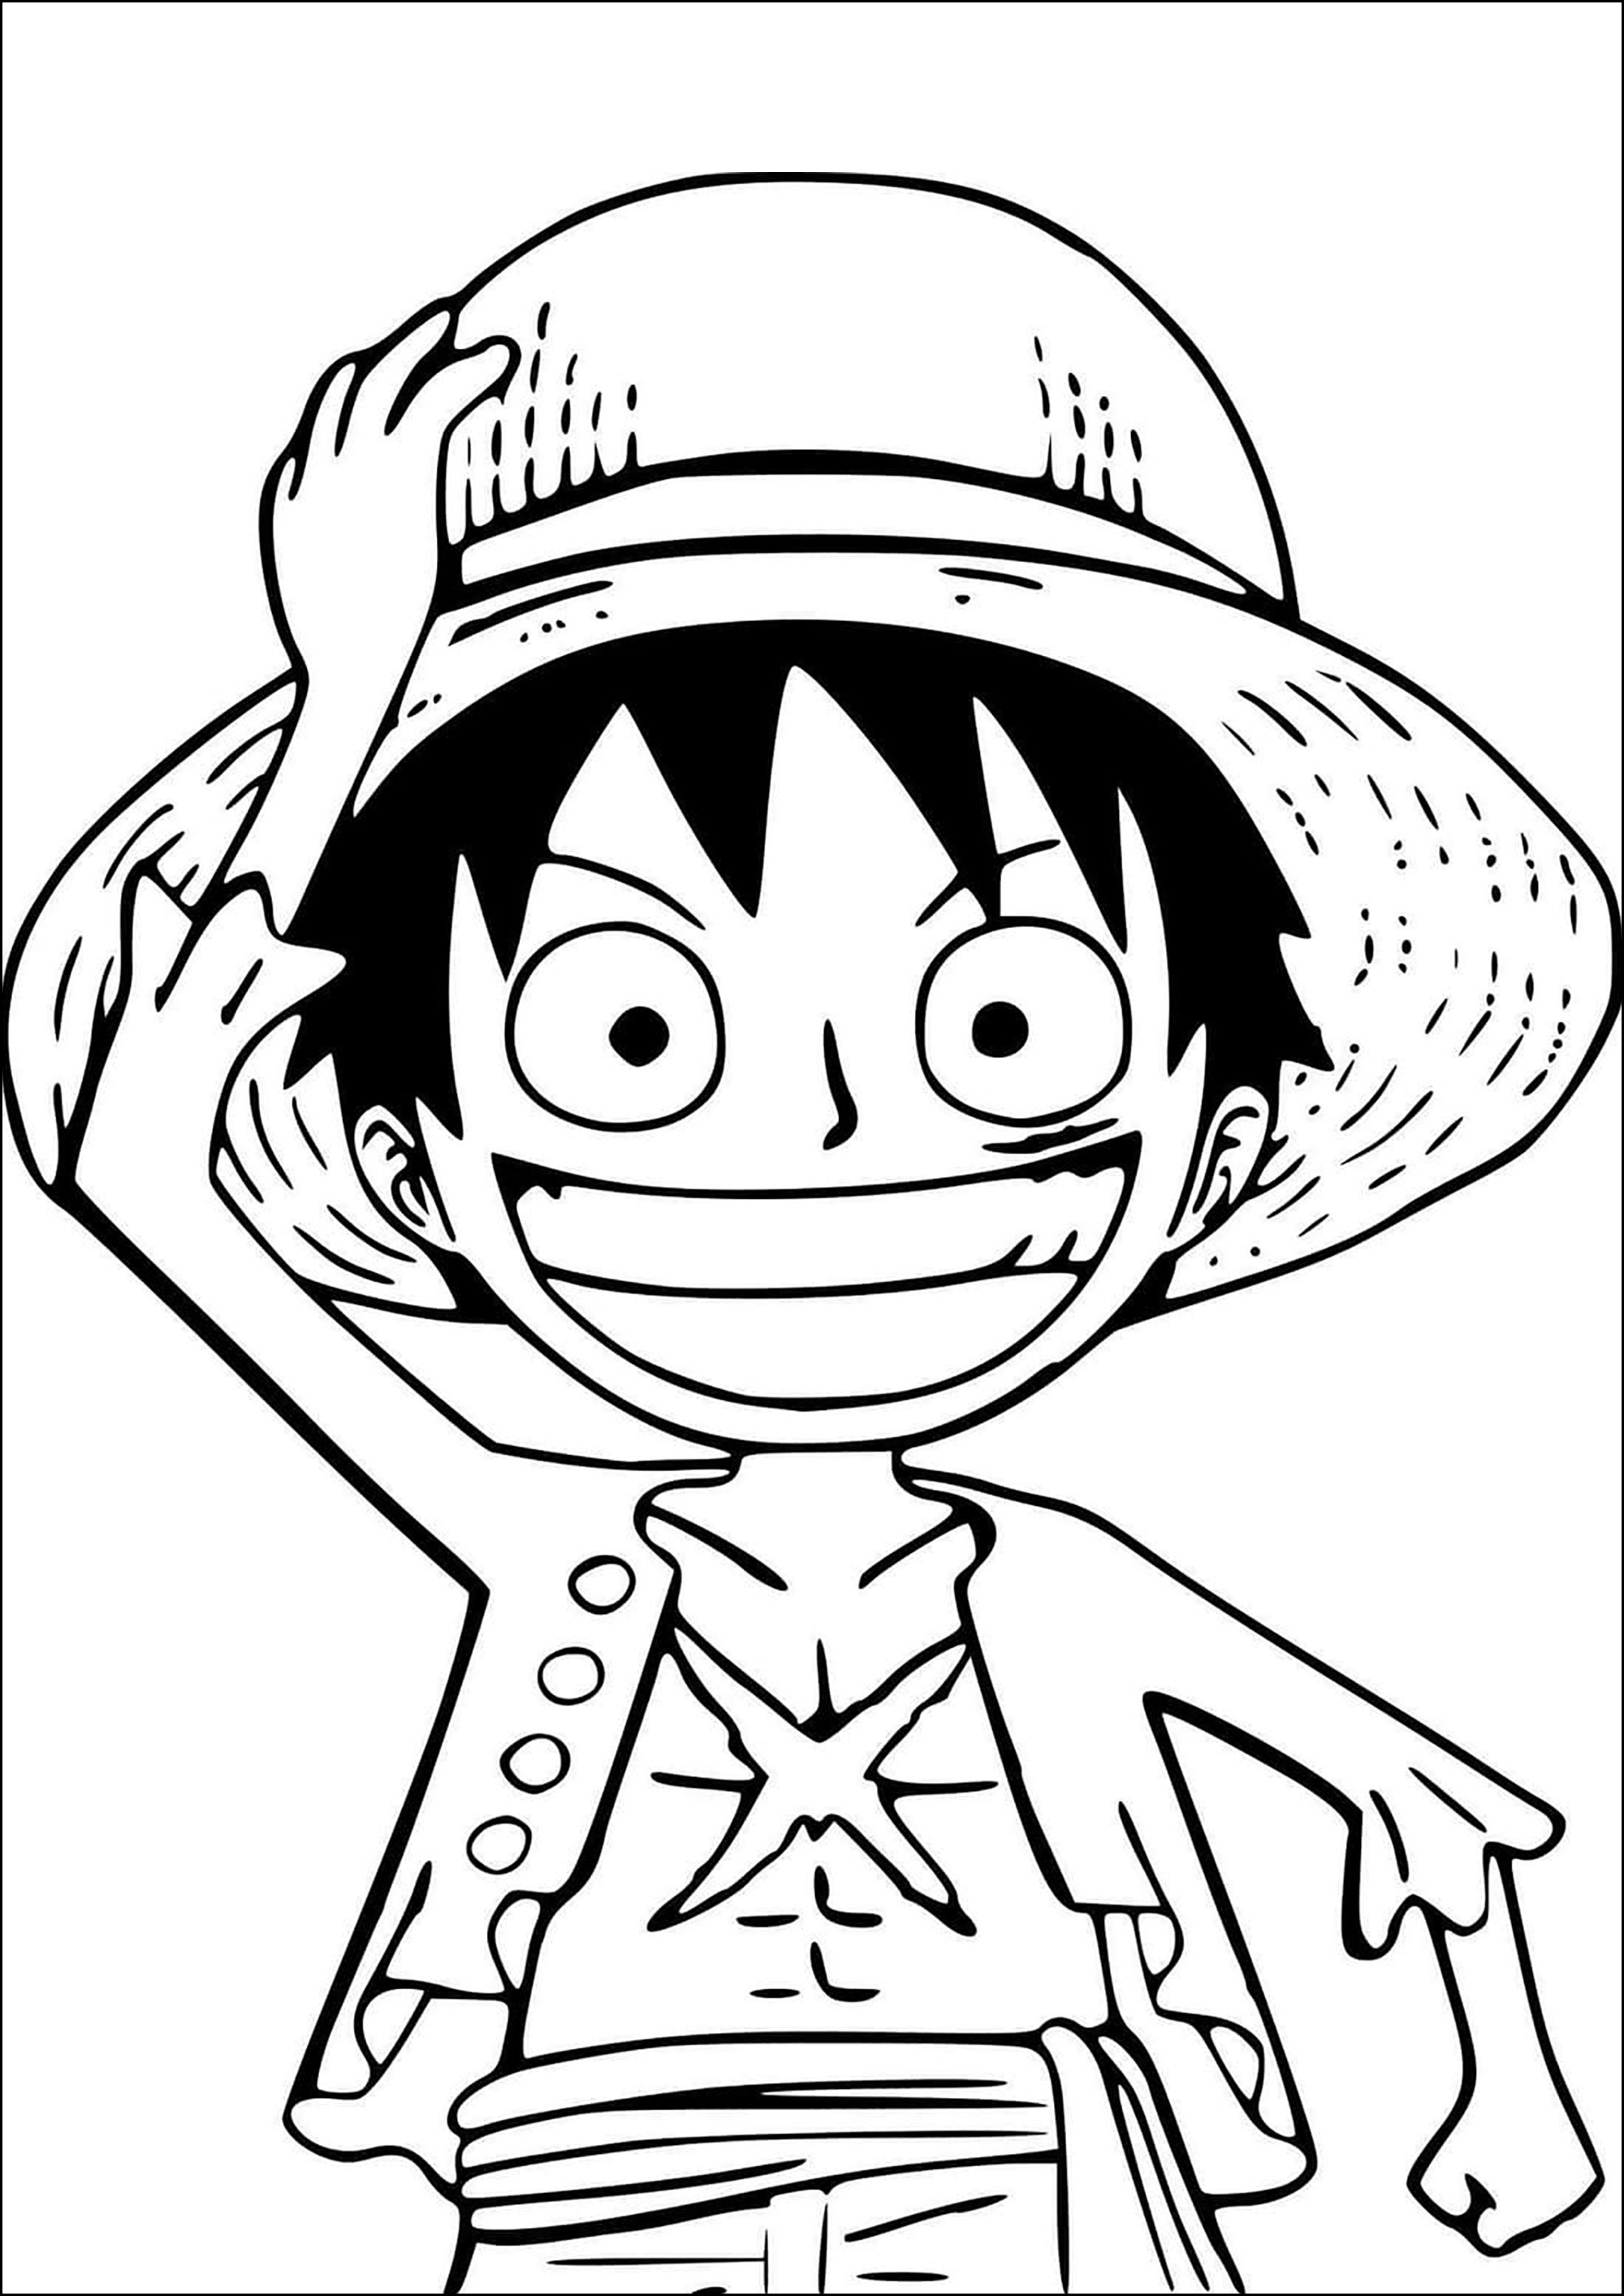 Monkey D. Luffy desenhado em modo Kawaii